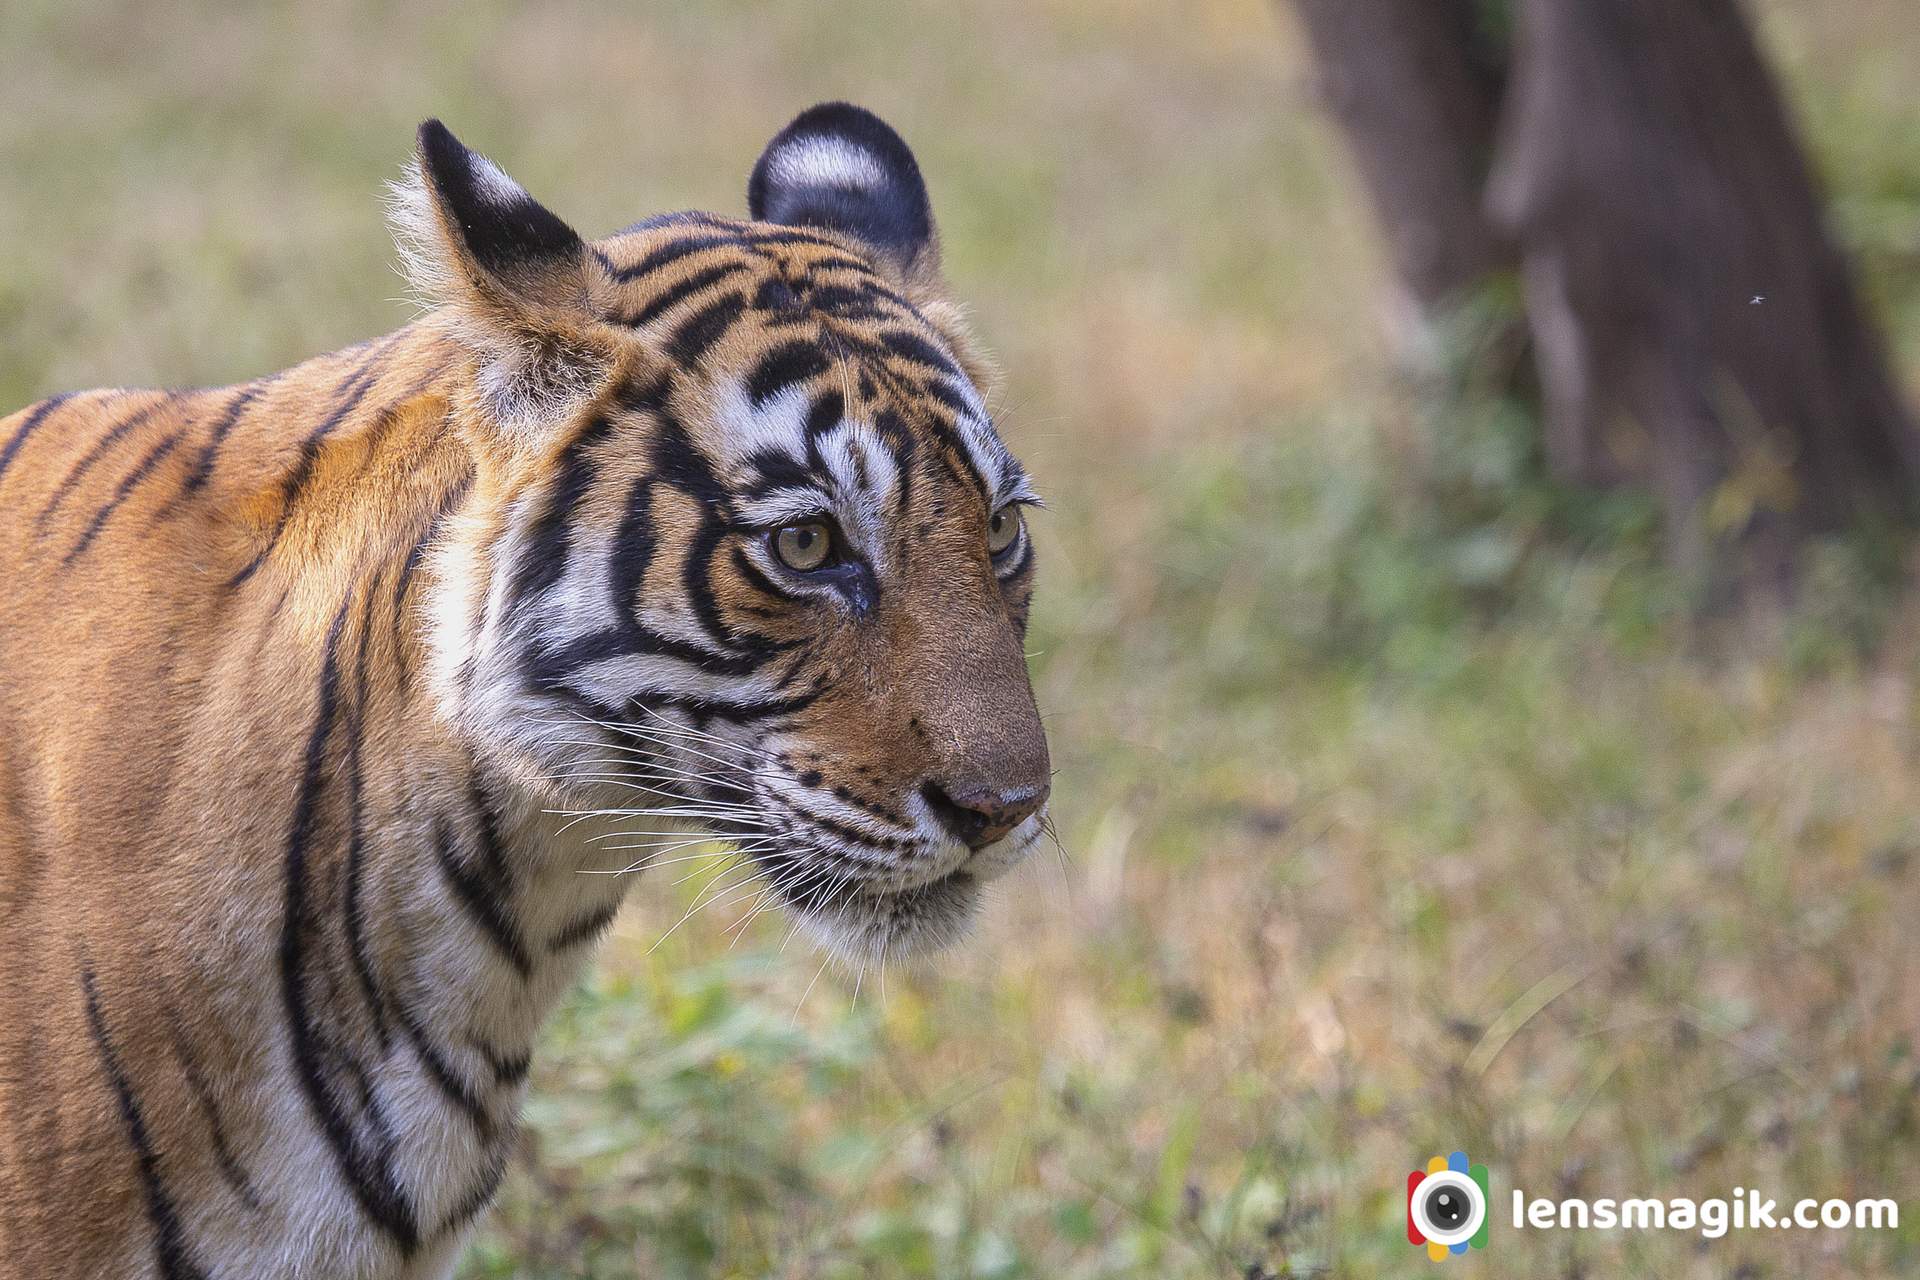 Tiger sanctuary India